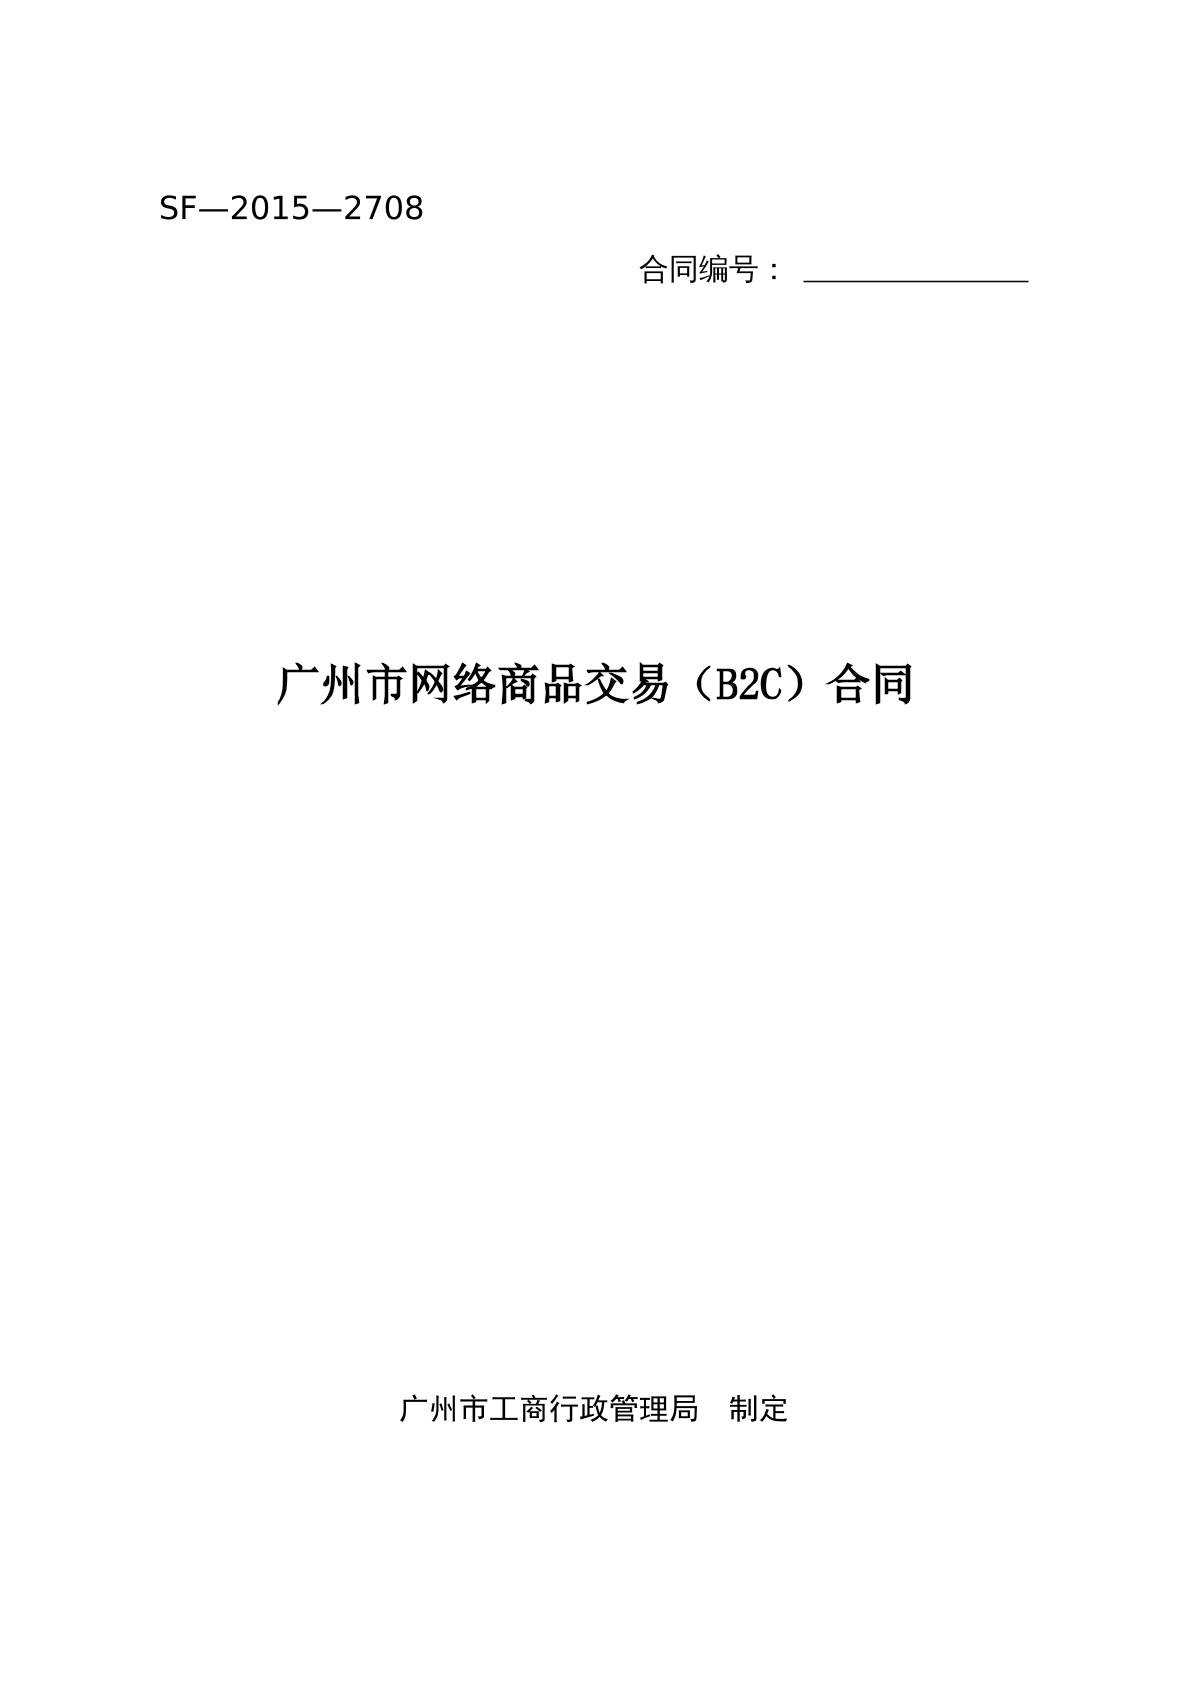 广州市网络商品交易B2C合同